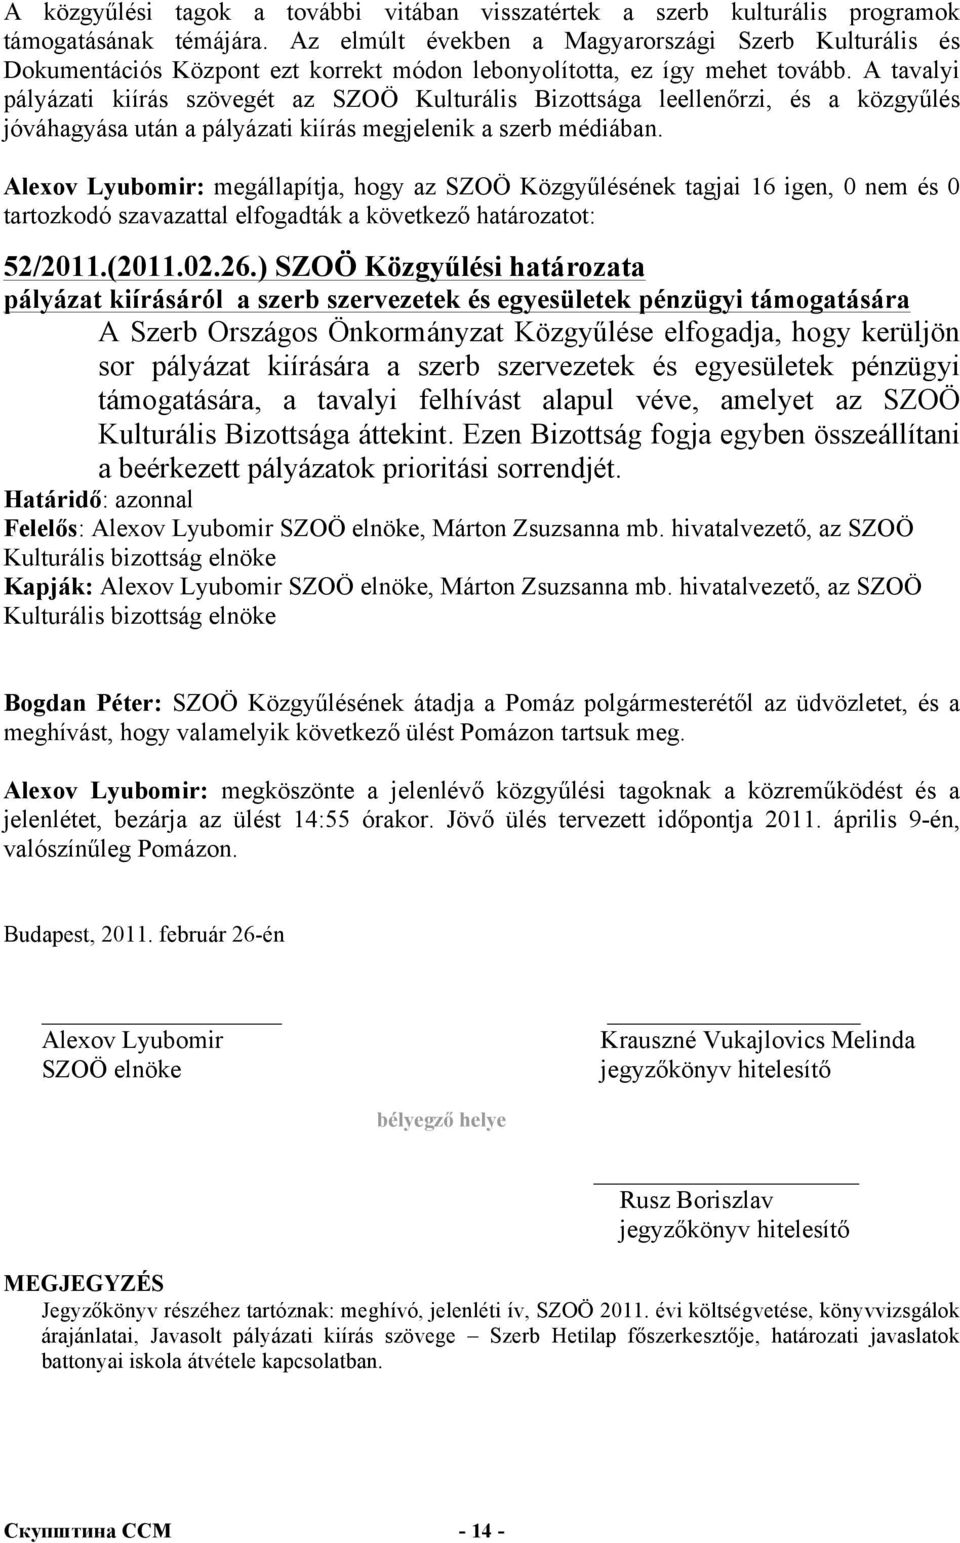 A tavalyi pályázati kiírás szövegét az SZOÖ Kulturális Bizottsága leellenőrzi, és a közgyűlés jóváhagyása után a pályázati kiírás megjelenik a szerb médiában.